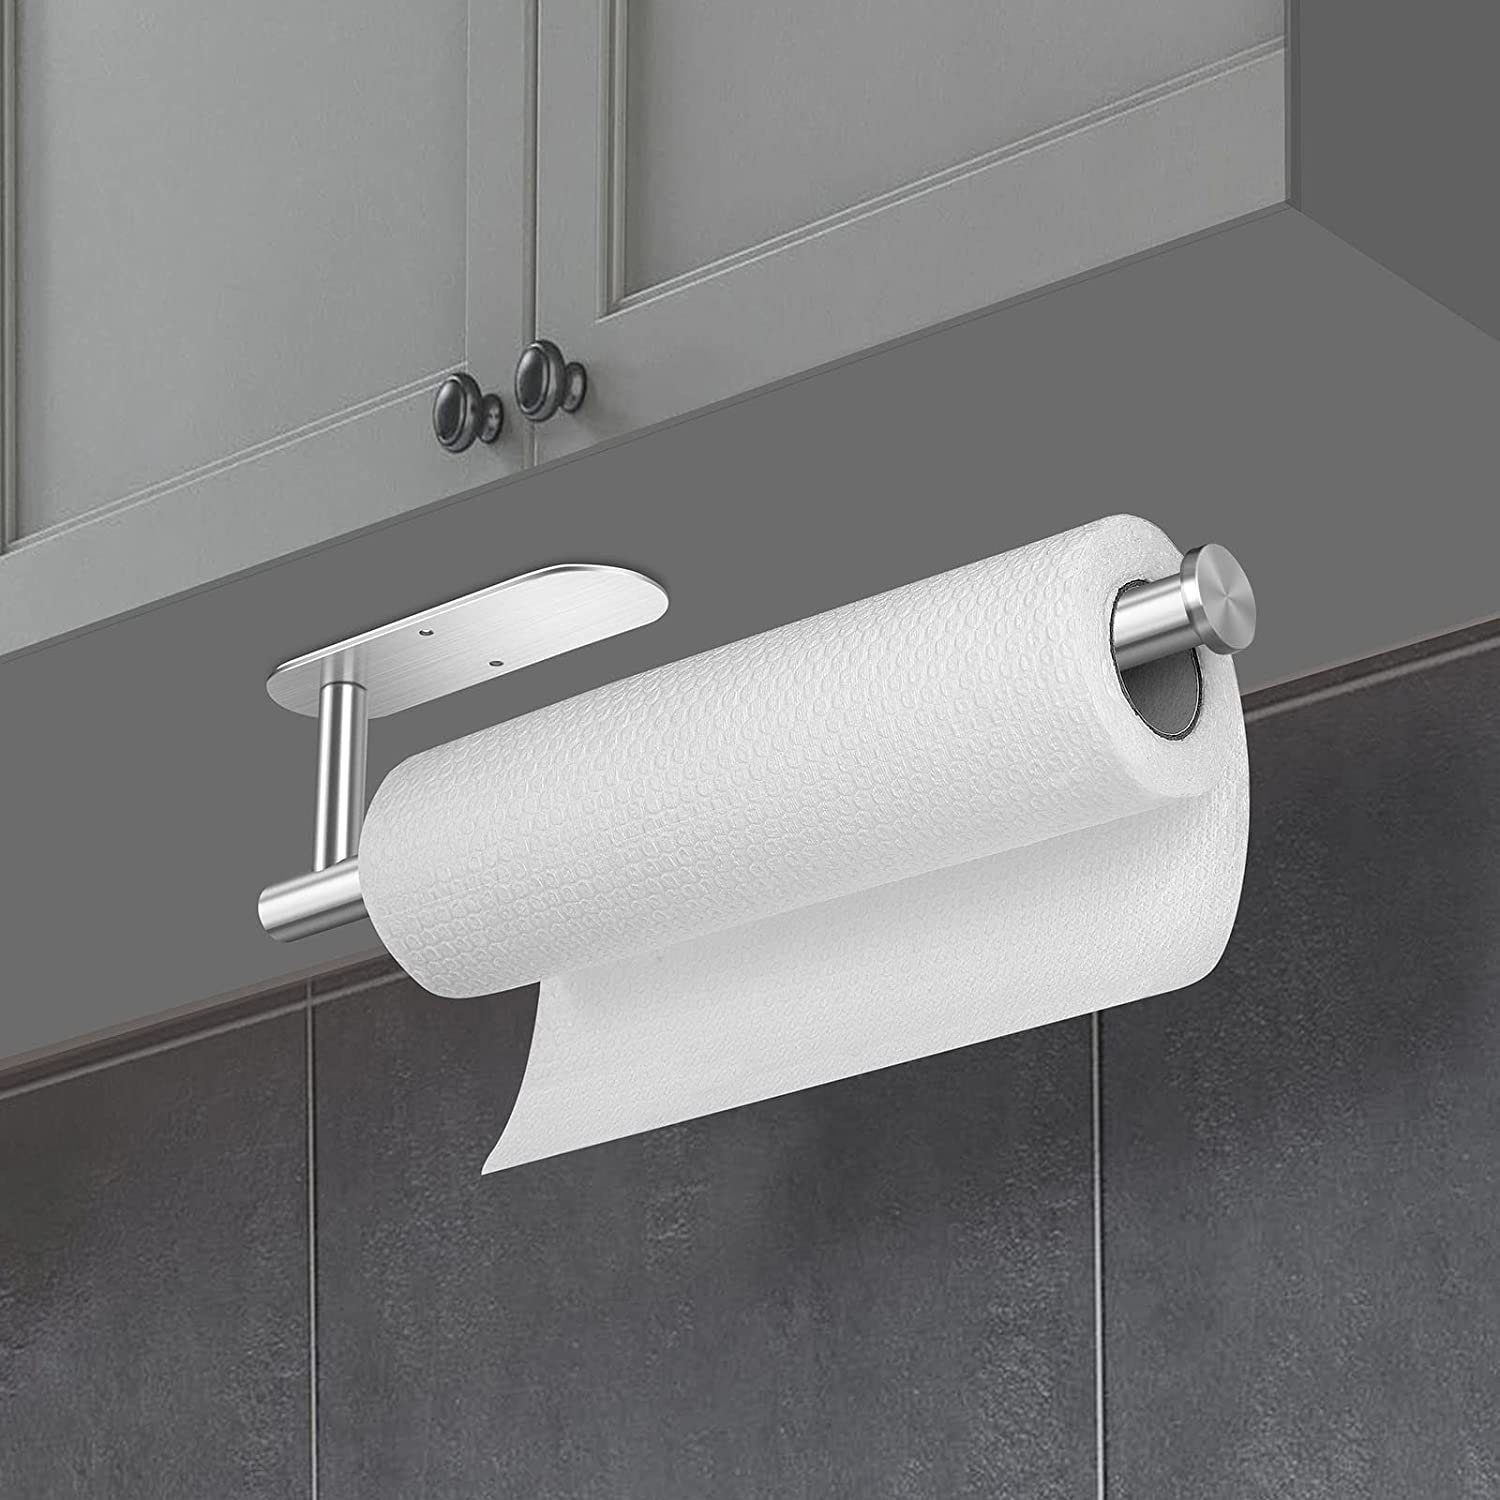 Silber zggzerg Badezimmer Bohren Waschbecken Ohne Küchenrollenhalter für Küchenrollenhalter Speisekammer